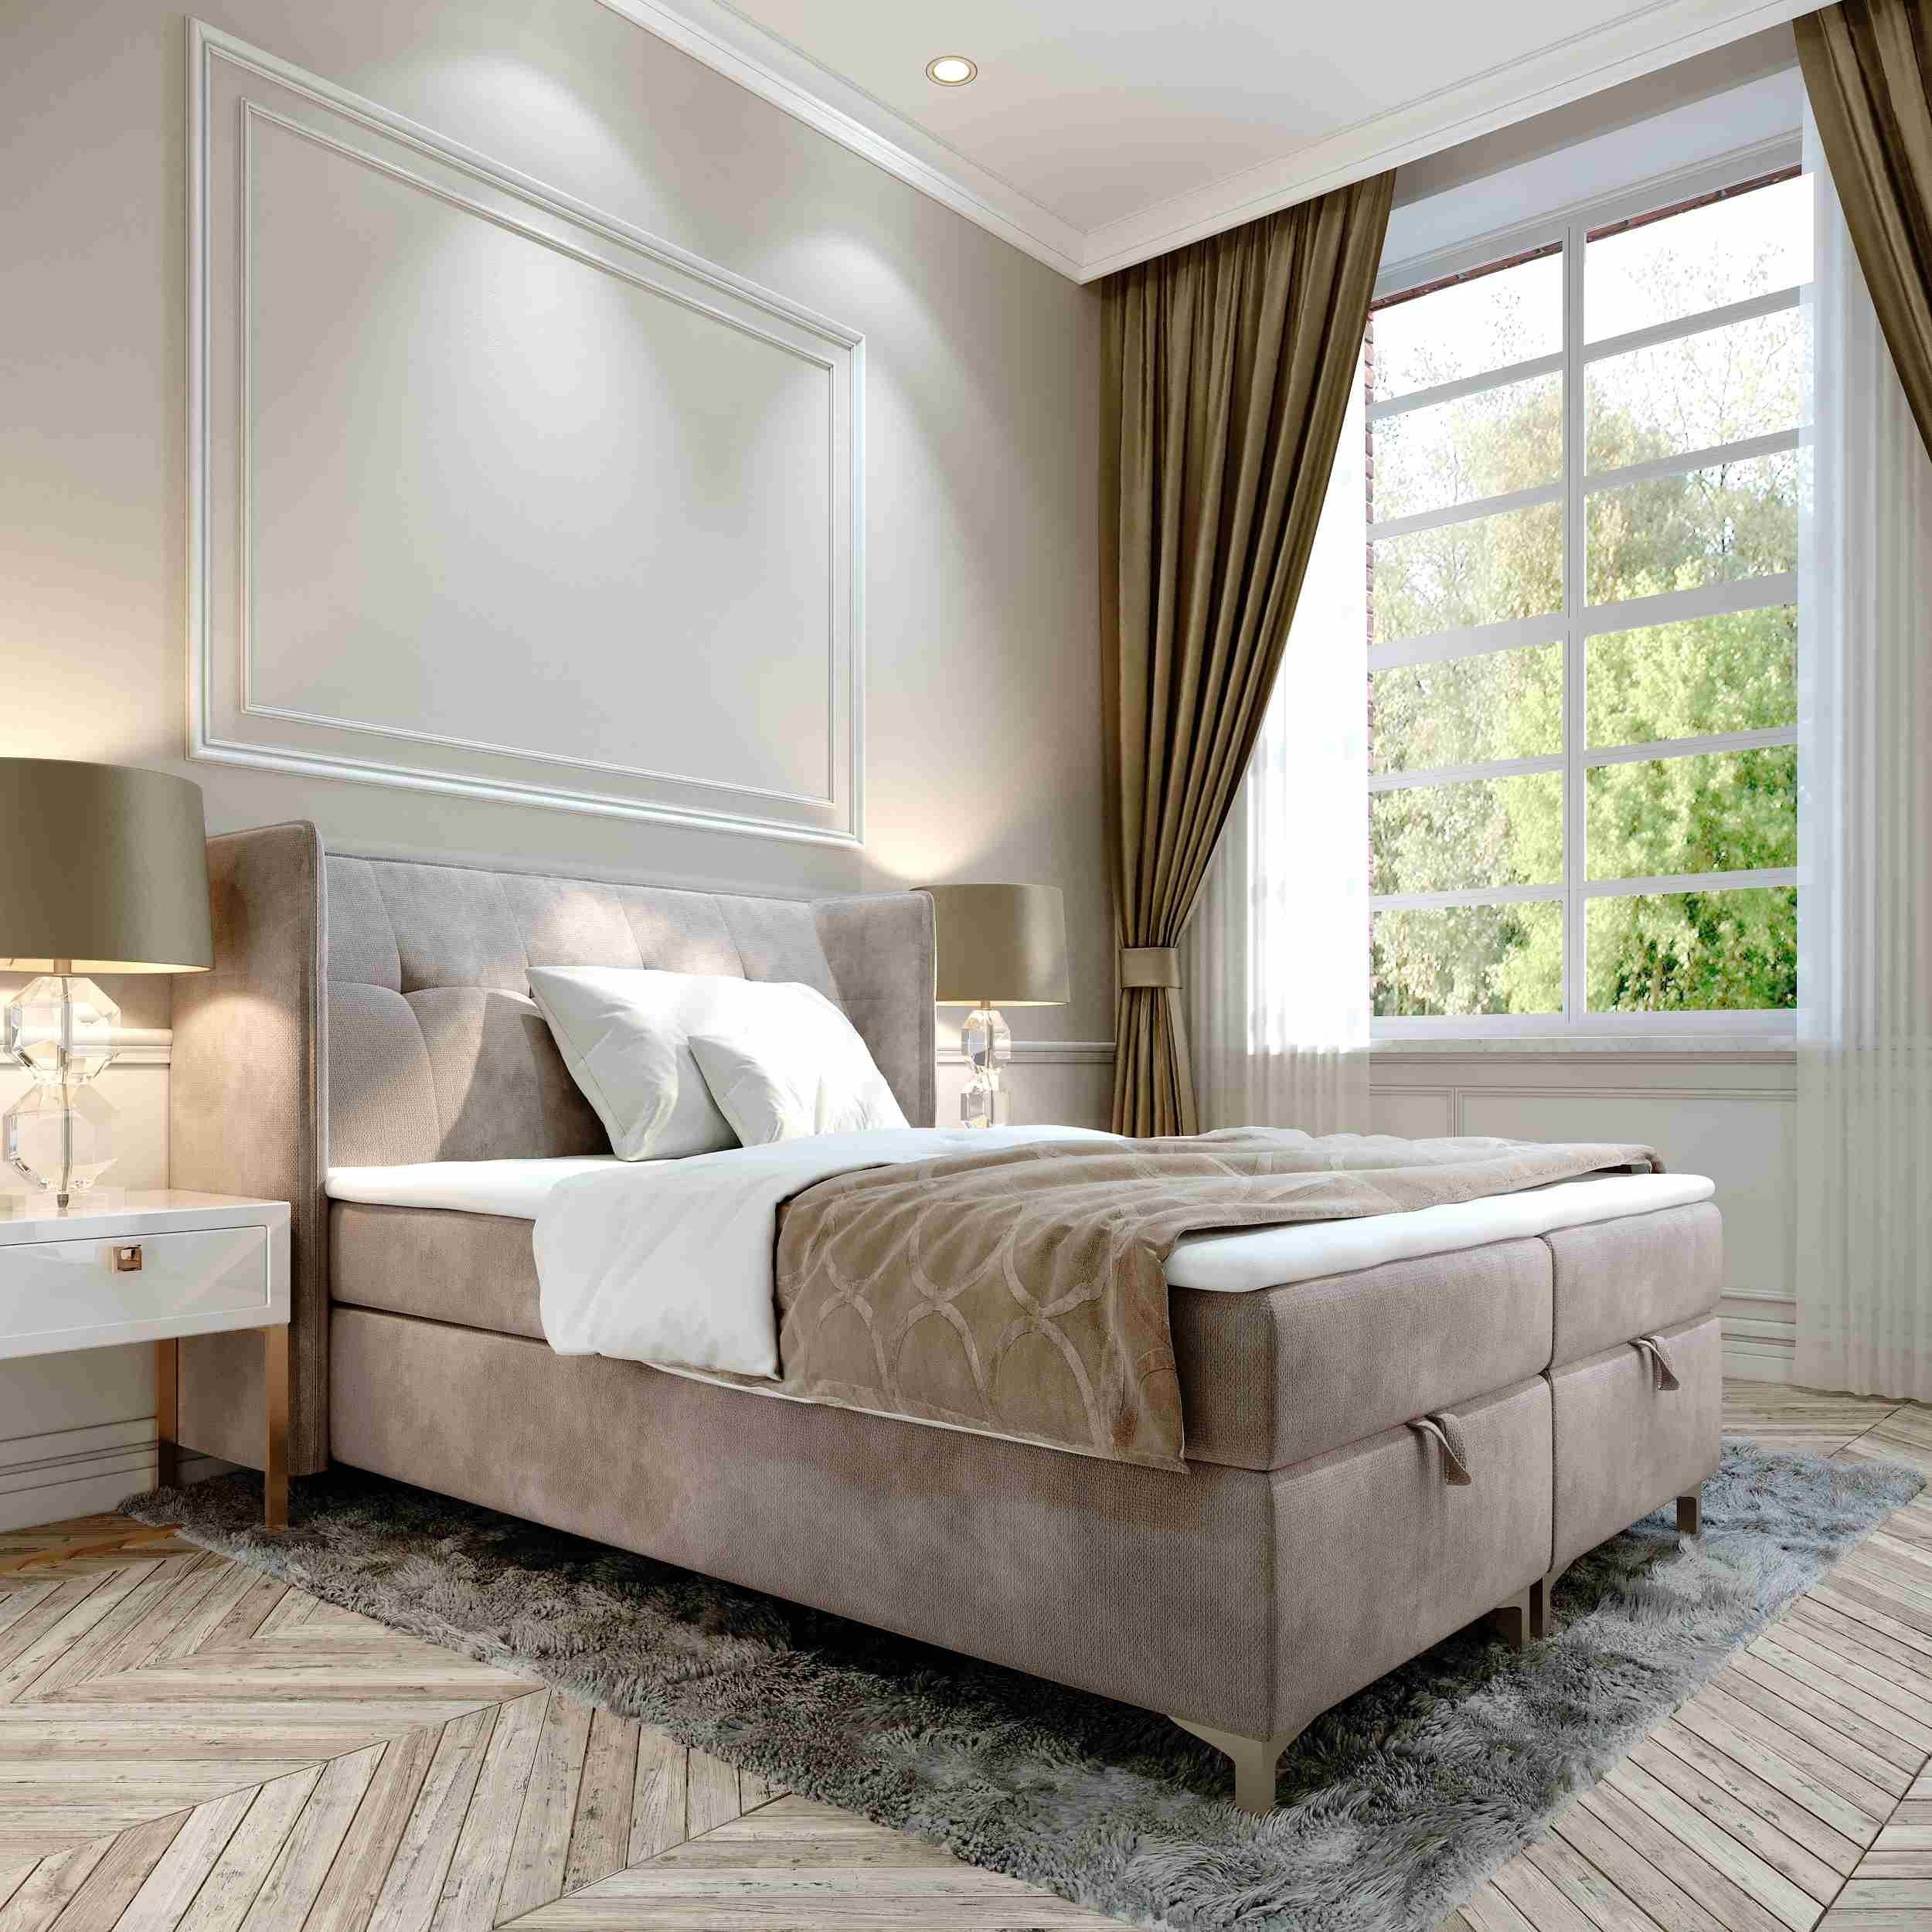 Furnix Polsterbett TOLIE 140,160, 180, 200x 200 cm Bett mit Bettkasten und Topper, wahlweise in 5 Größen und 7 Farben Beige | Polsterbetten